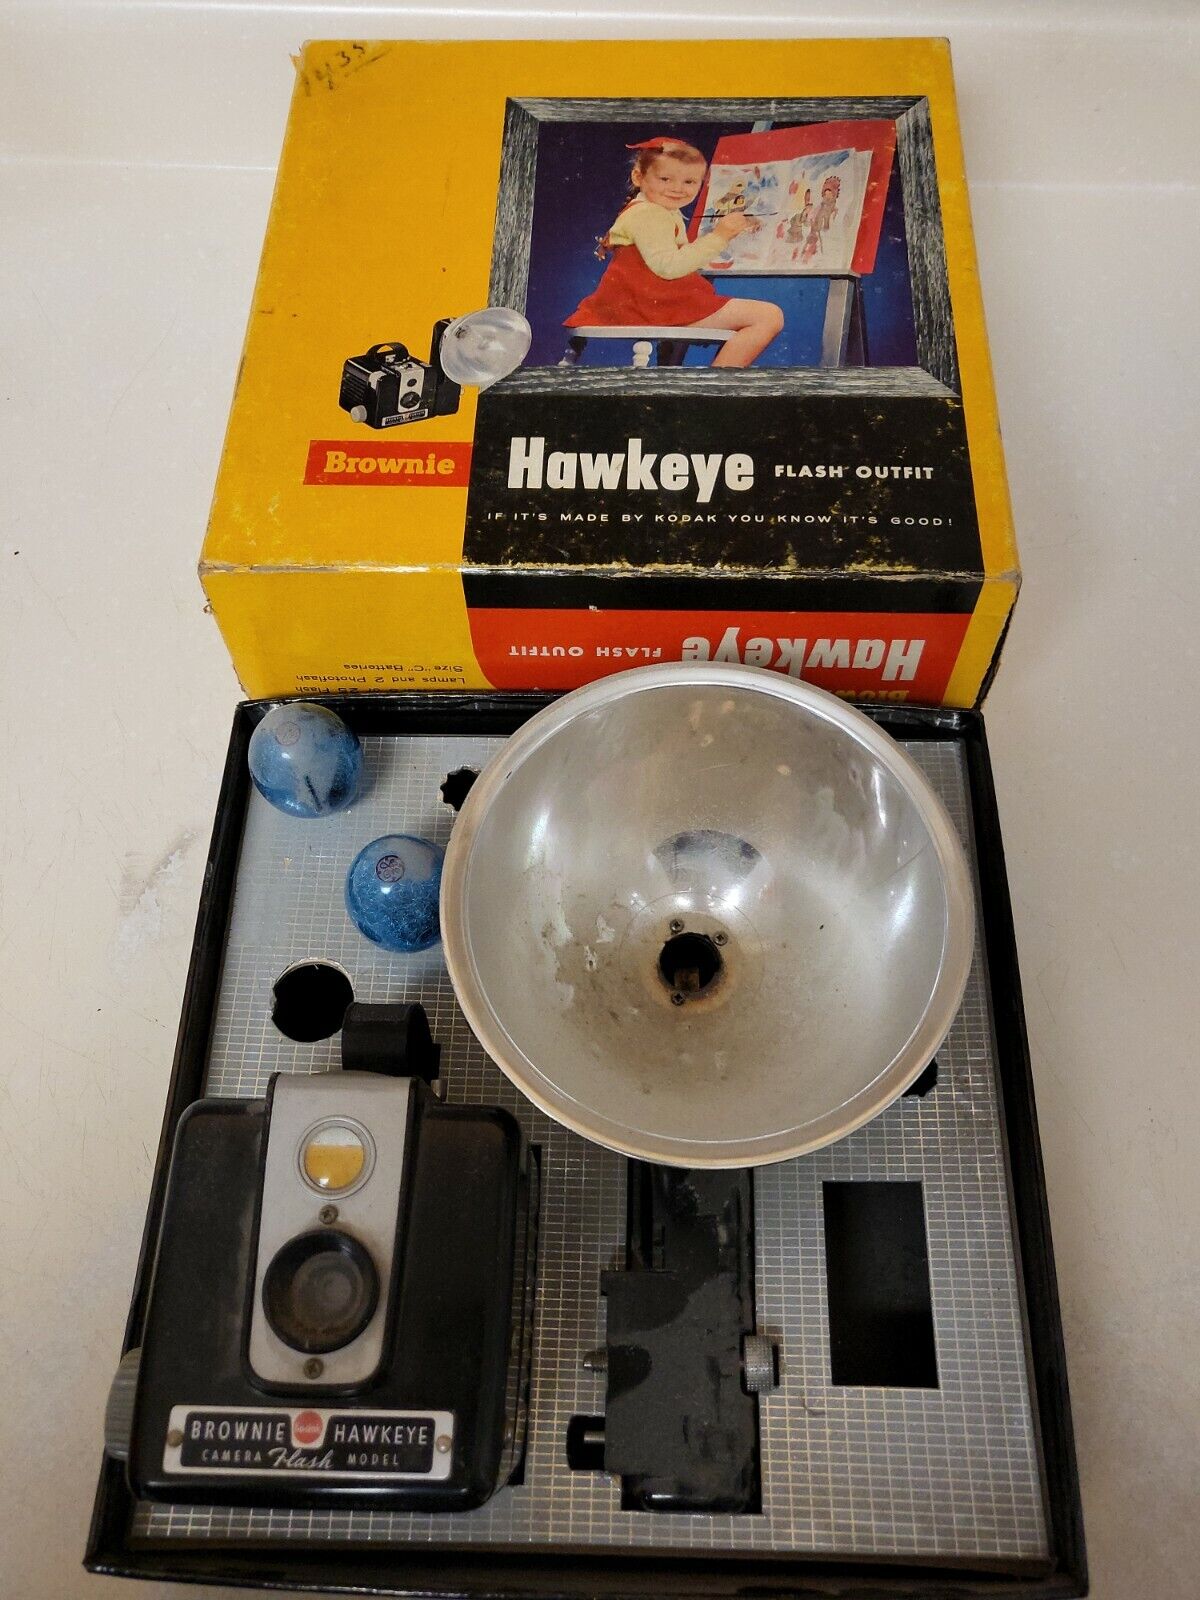 Vintage Kodak Brownie Hawkeye Camera Flash Model Original Box. Working Or Parts?